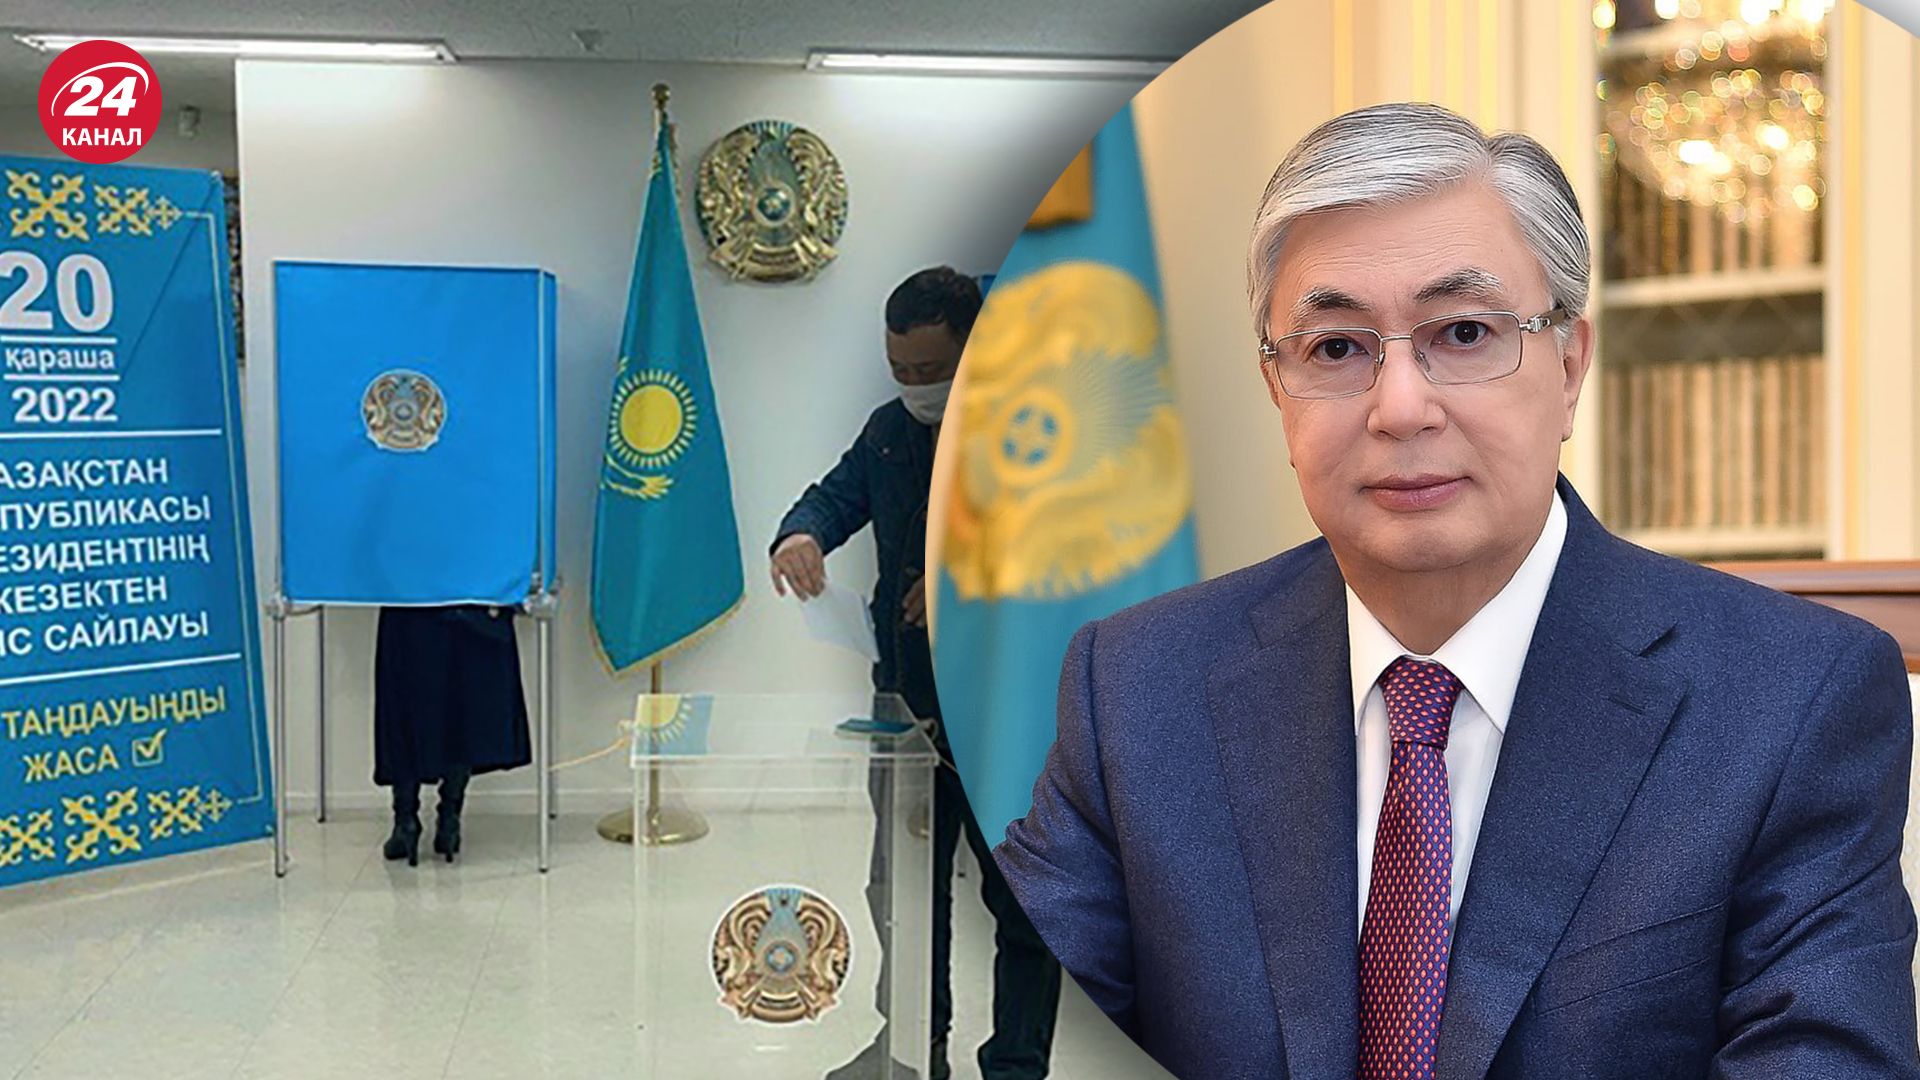 Вибори у Казахстані - Токаєв прокоментував результати